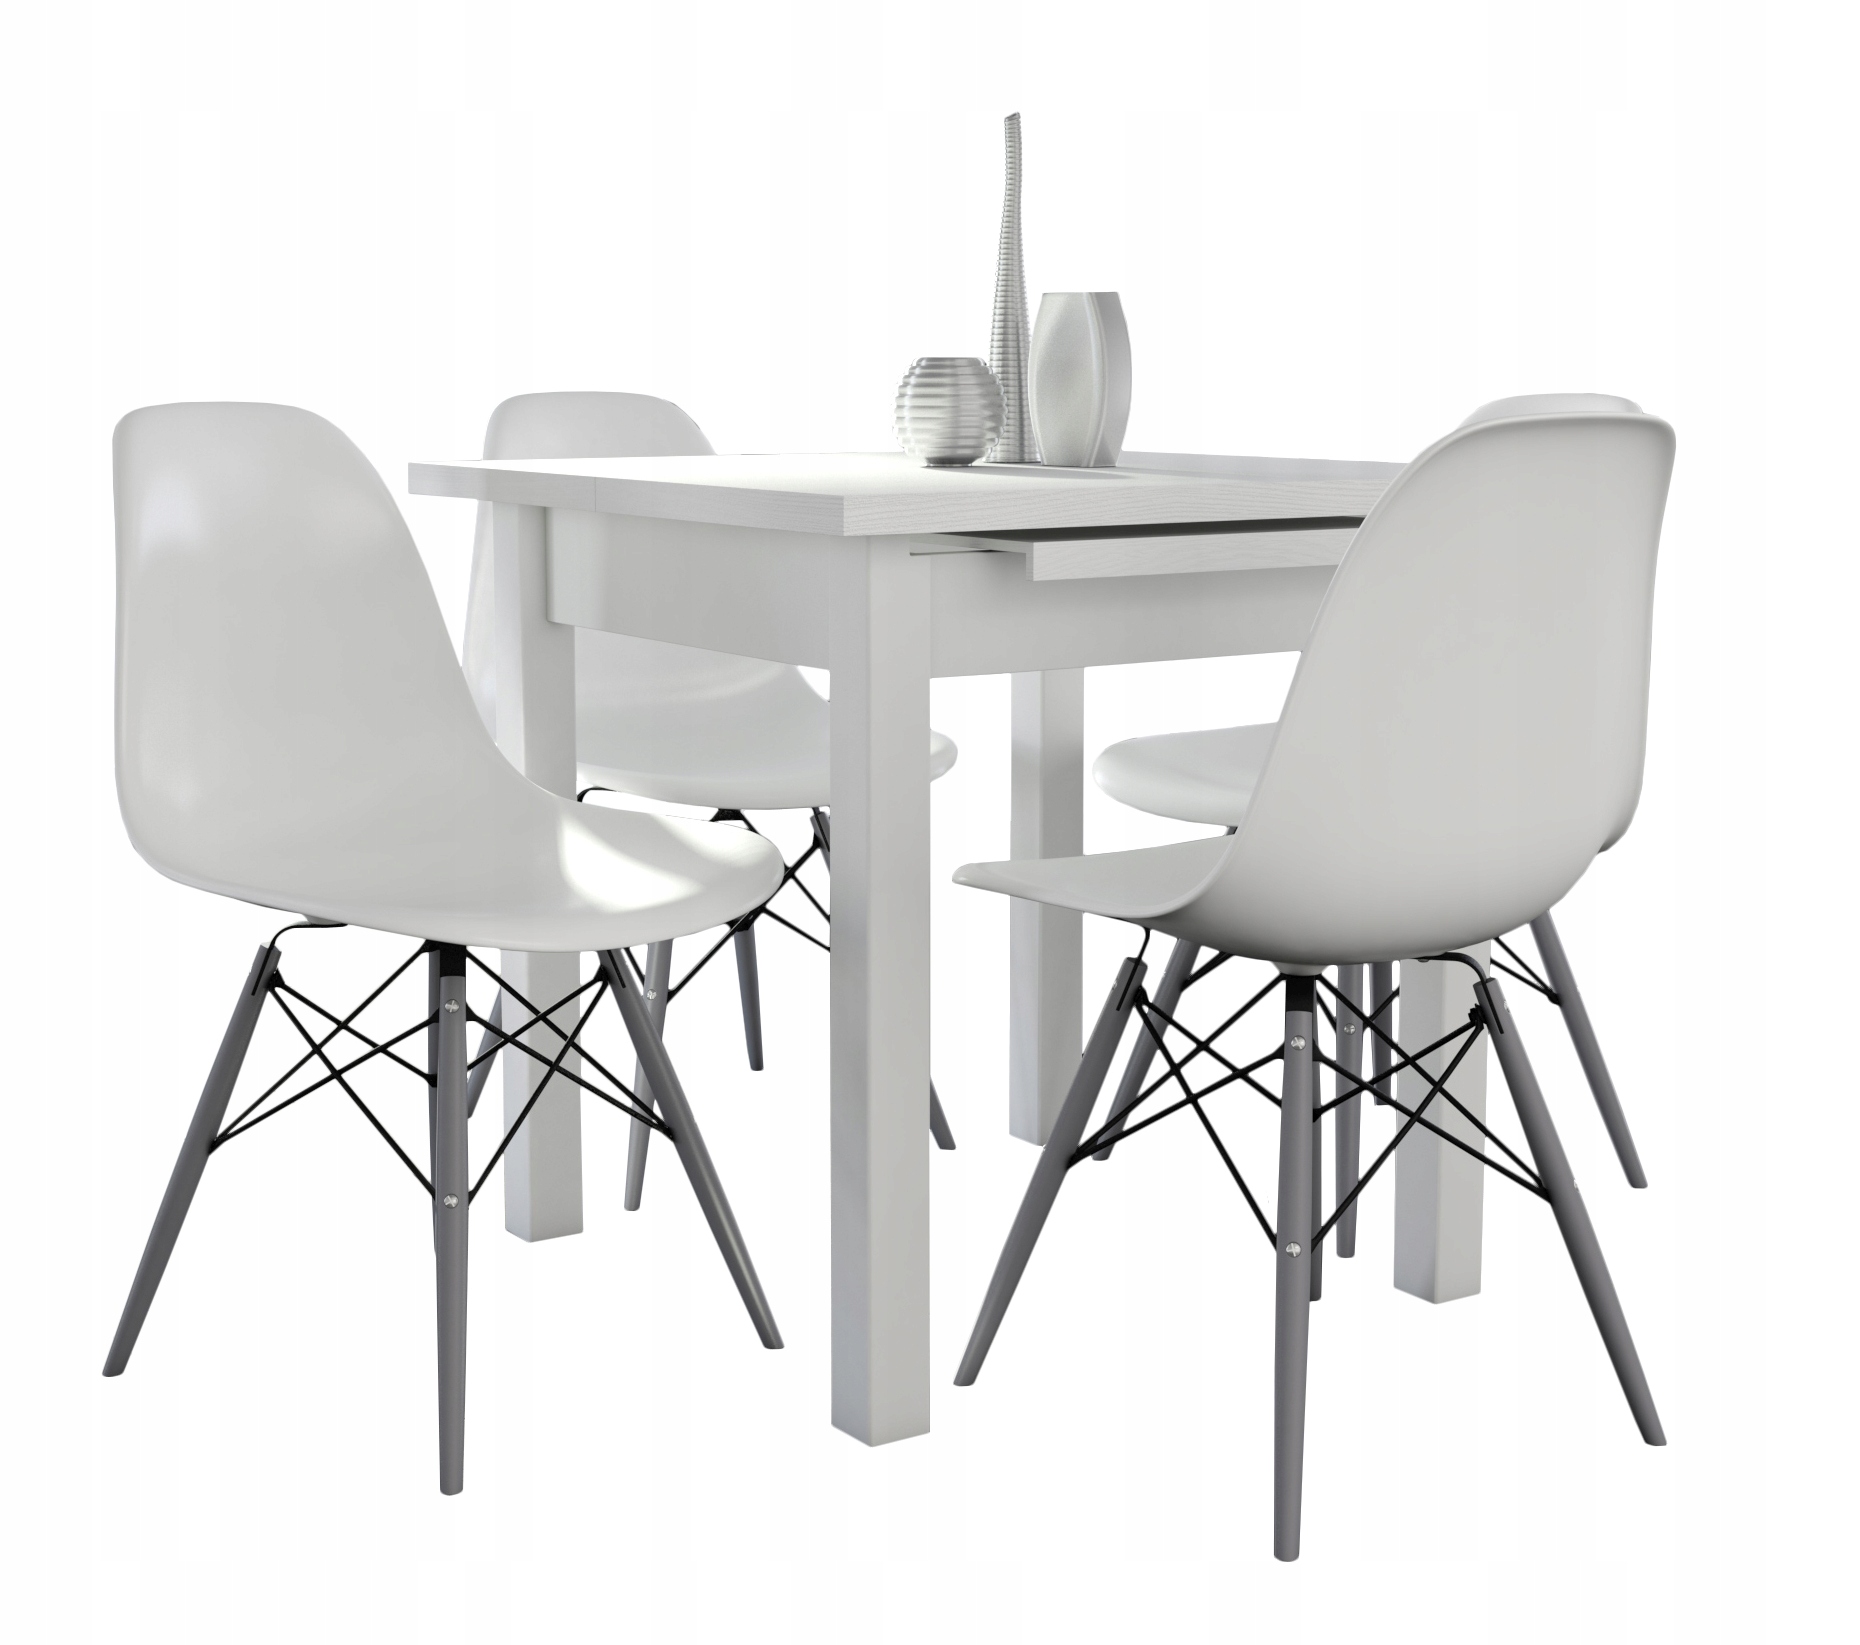 Кухонные столы и стулья для маленькой кухни - комплектные: поставить круглый и пристенный стол со стульями, с табуретками для круглого стола